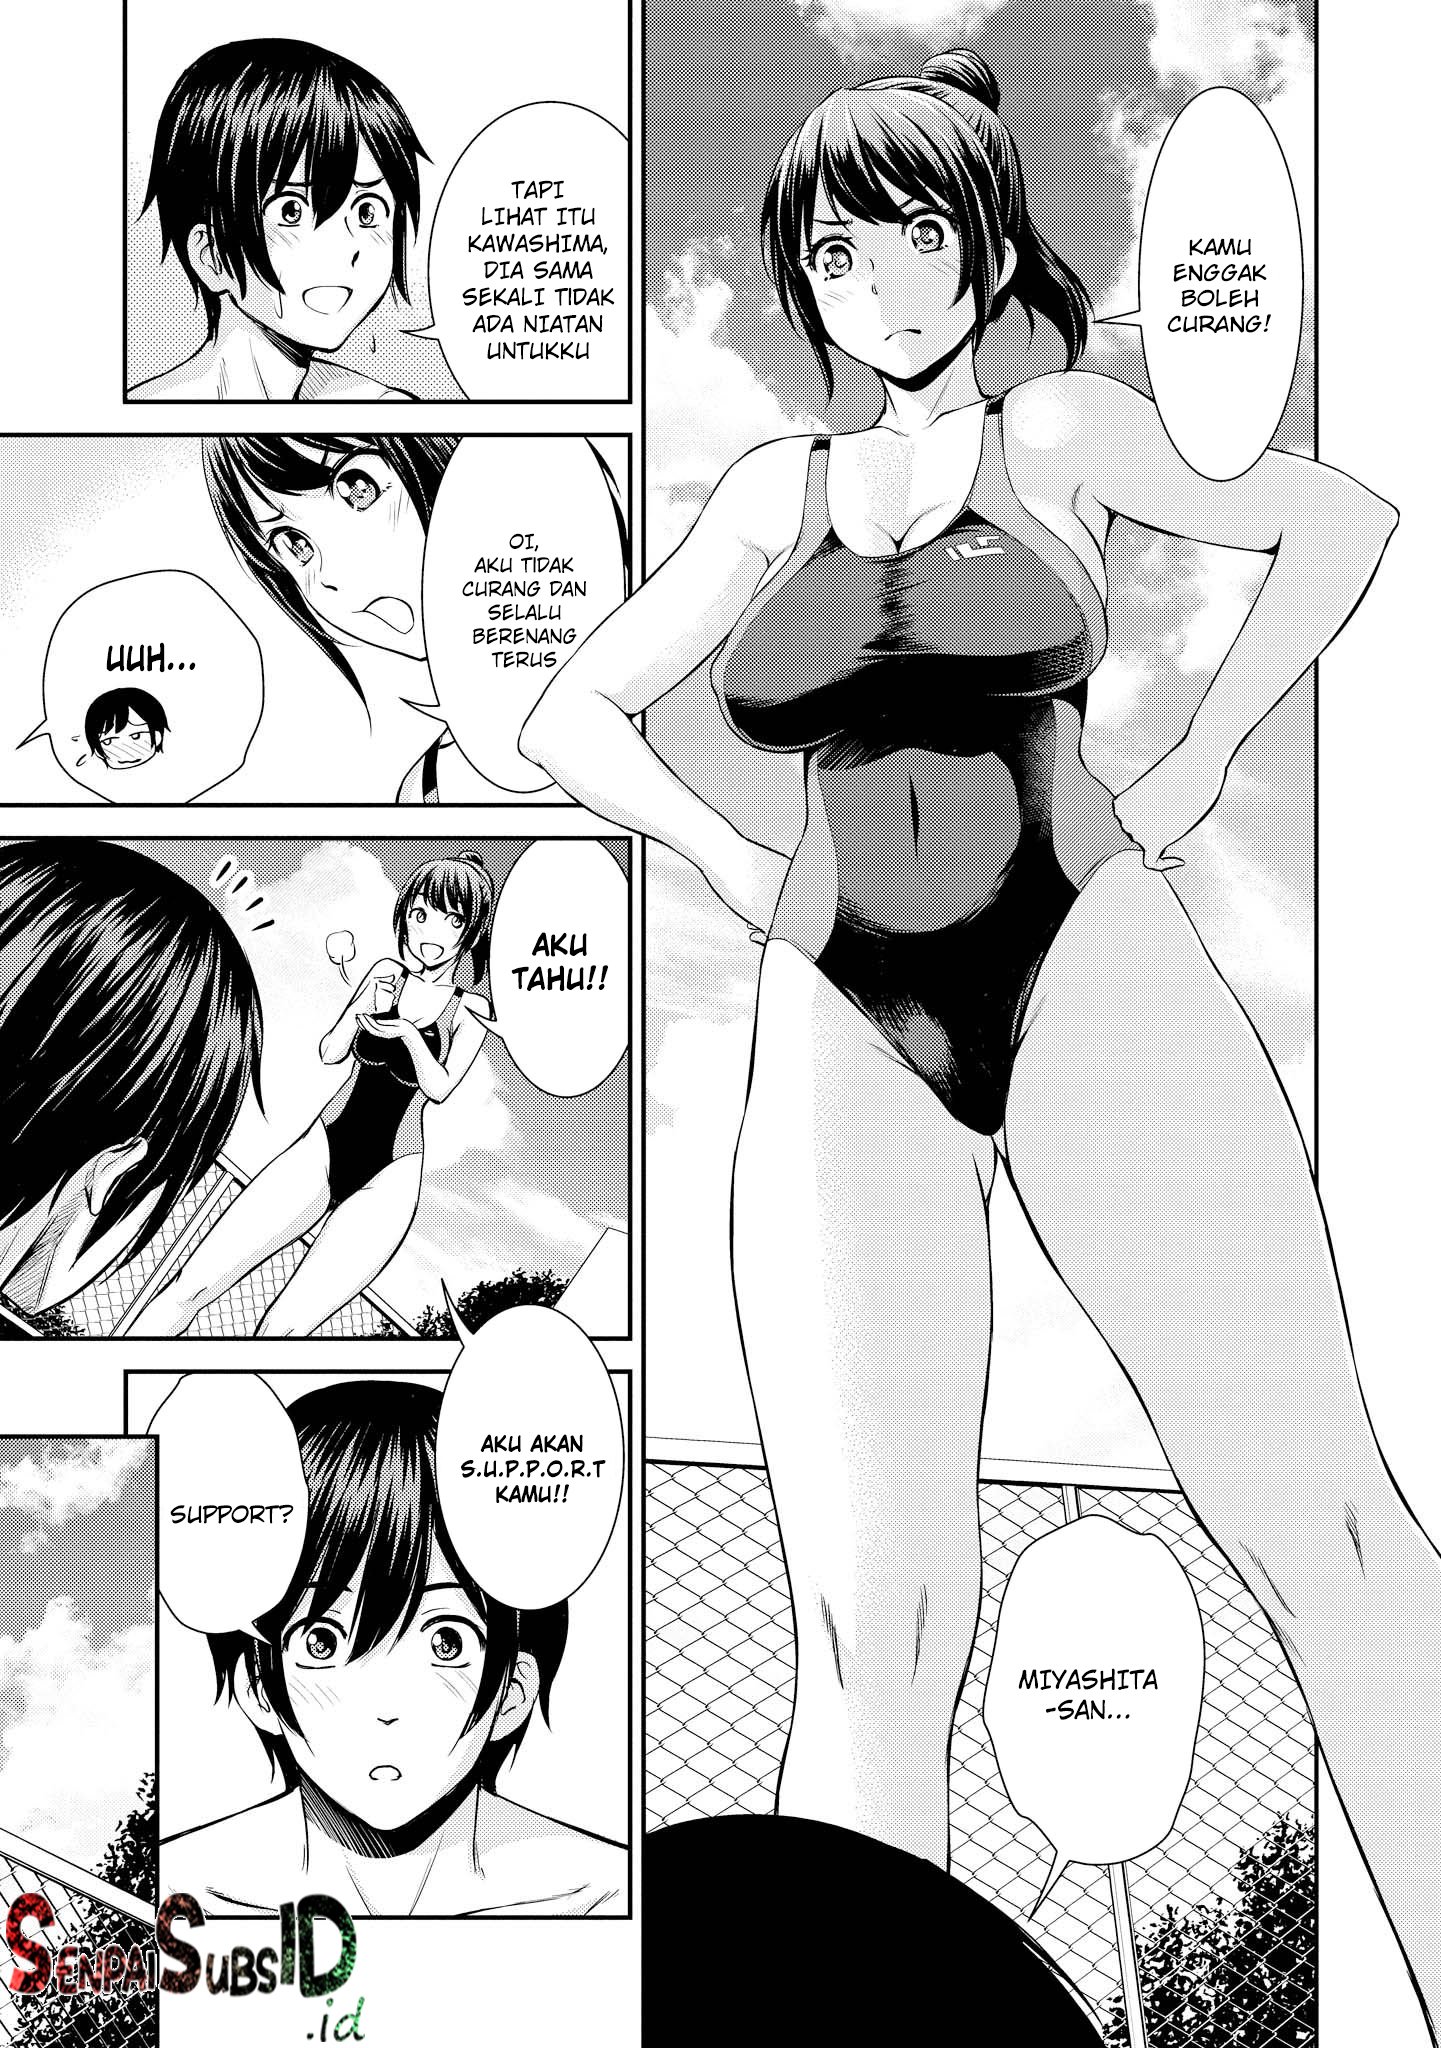 Tawawa na Oppai wa Suki desu ka? Kyonyuu Shoujo Anthology Comic Chapter 01